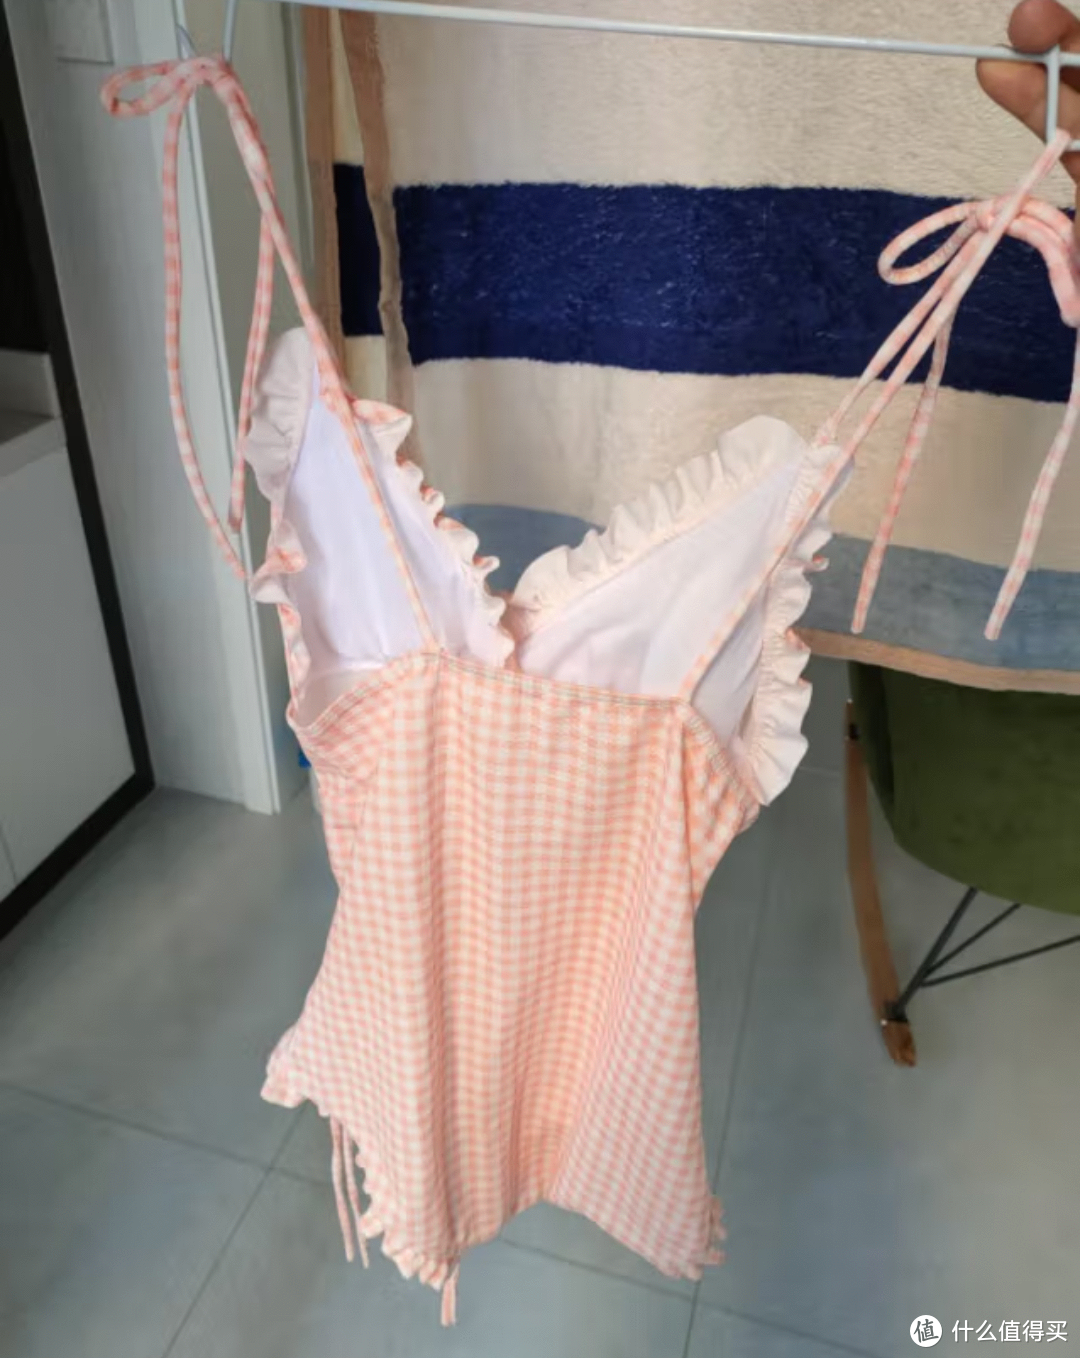 夏季就要穿性感粉红网格连体泳衣去玩水